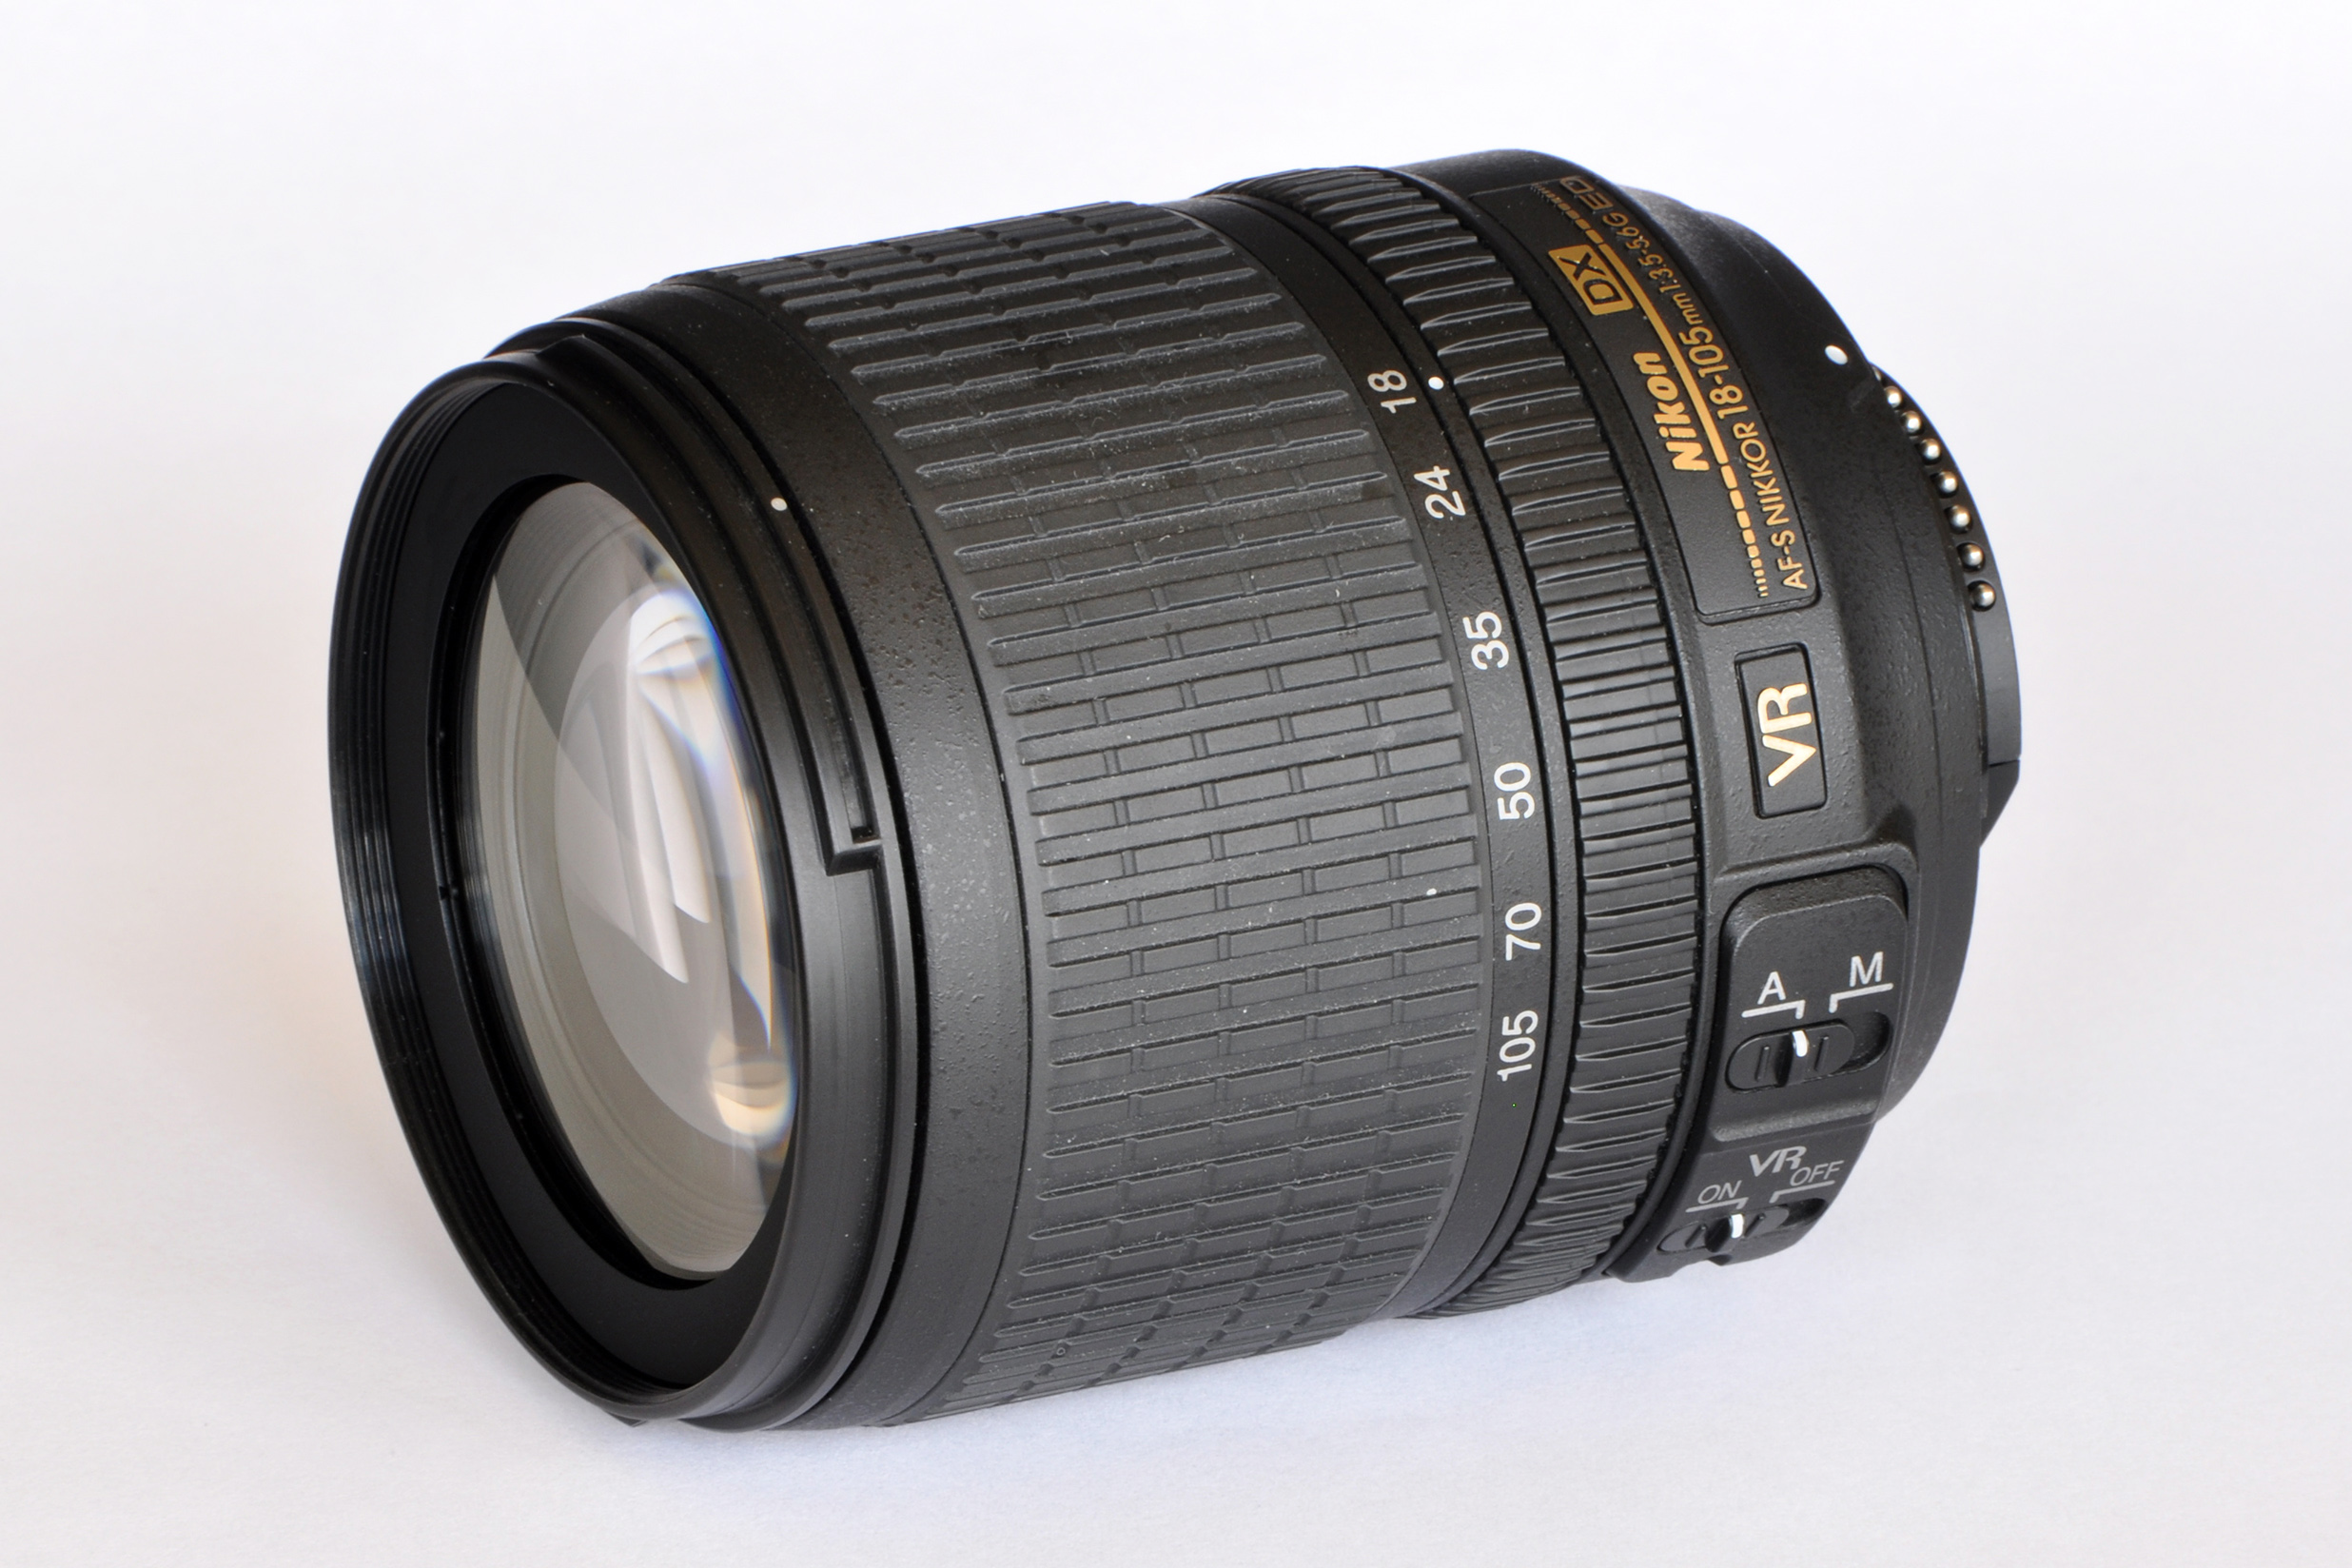 Nikon Objectif Nikkor 18-105 mm f/3.5-5.6G ED VR AF-S DX 